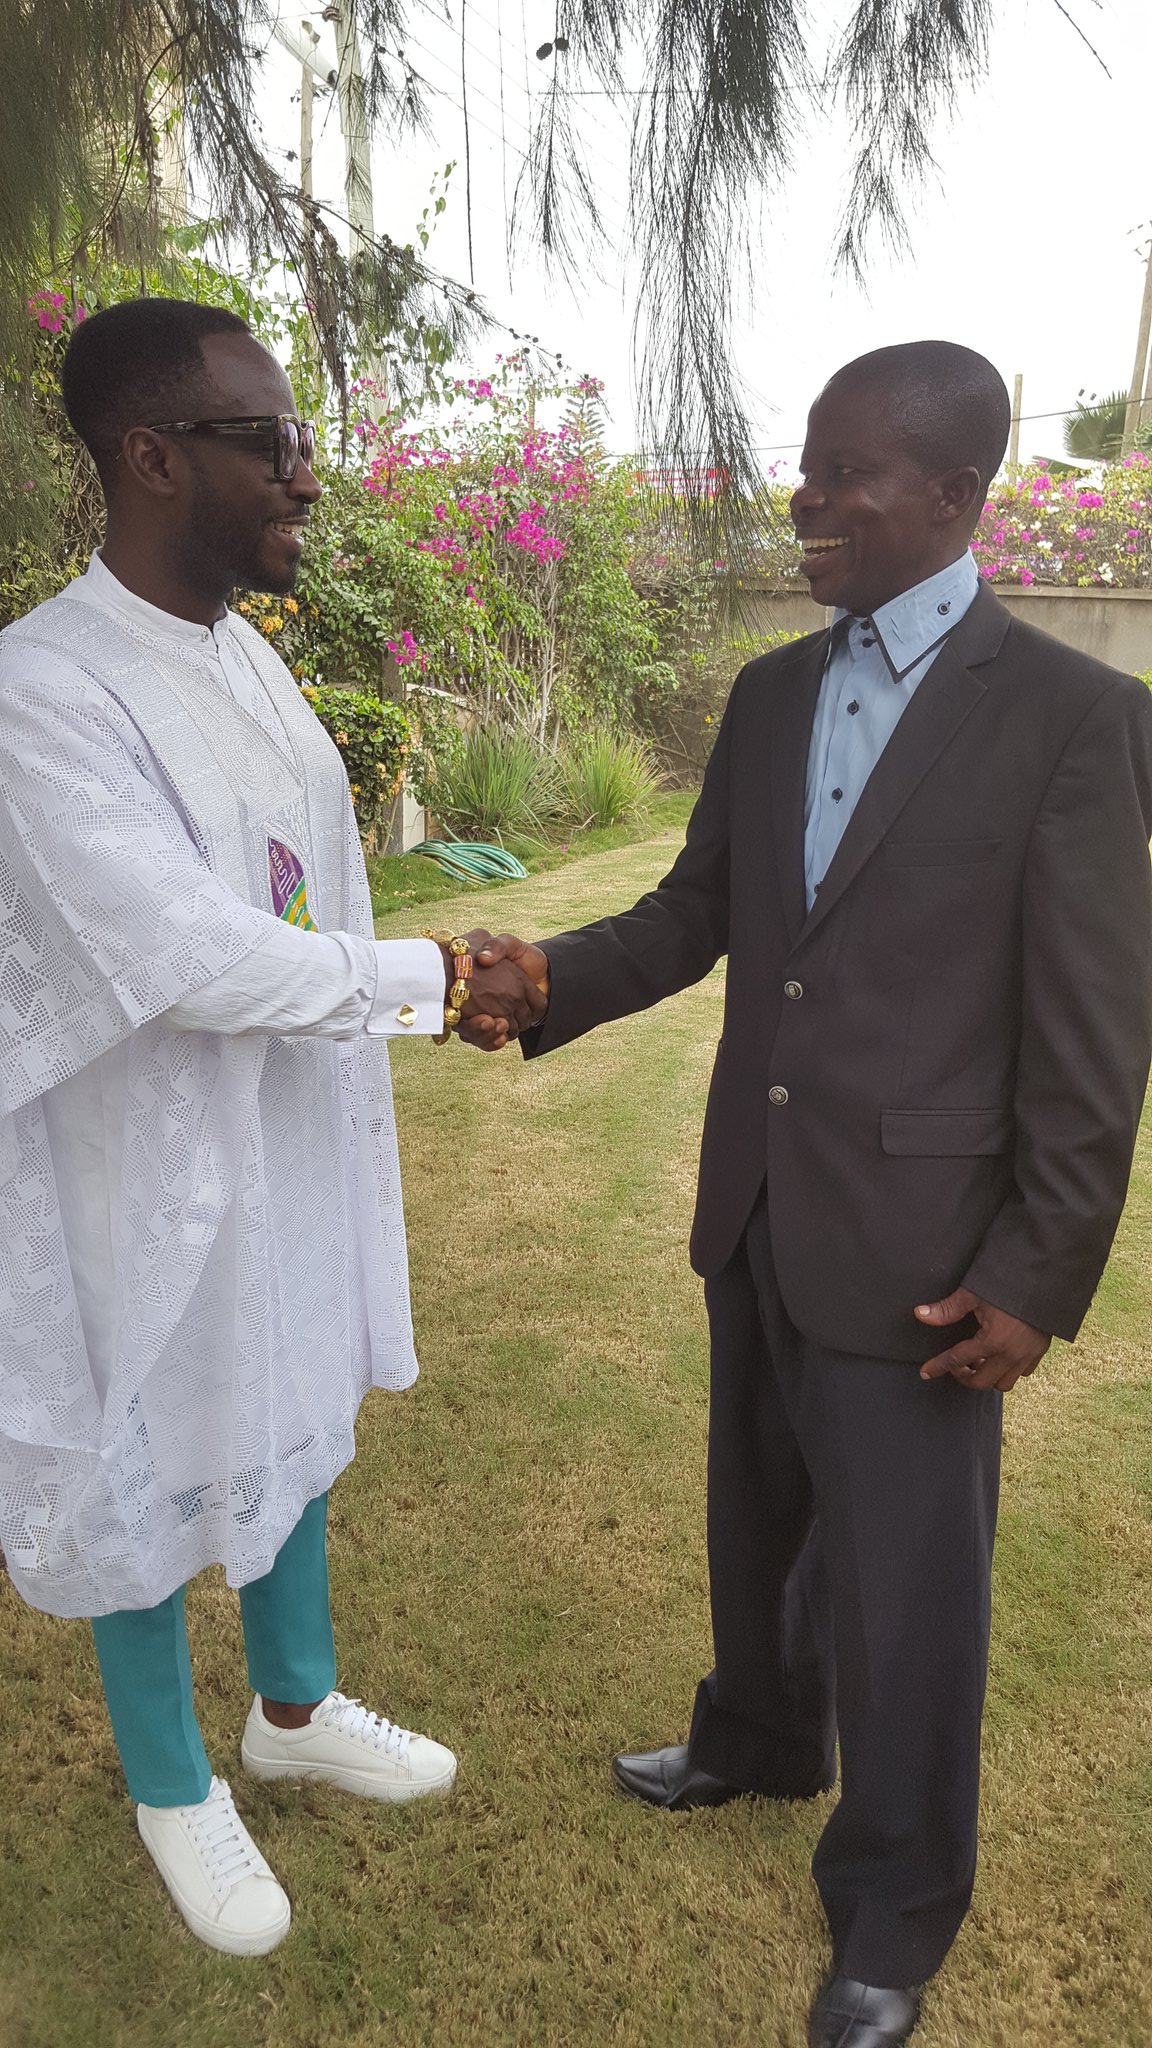  Ghanaian musician Okyeame Kwame (left) being greeted by DGM Ghana National Steering Committee Chairman Hayford Duodu (right); Credit: Hayford Duodu, DGM Ghana 